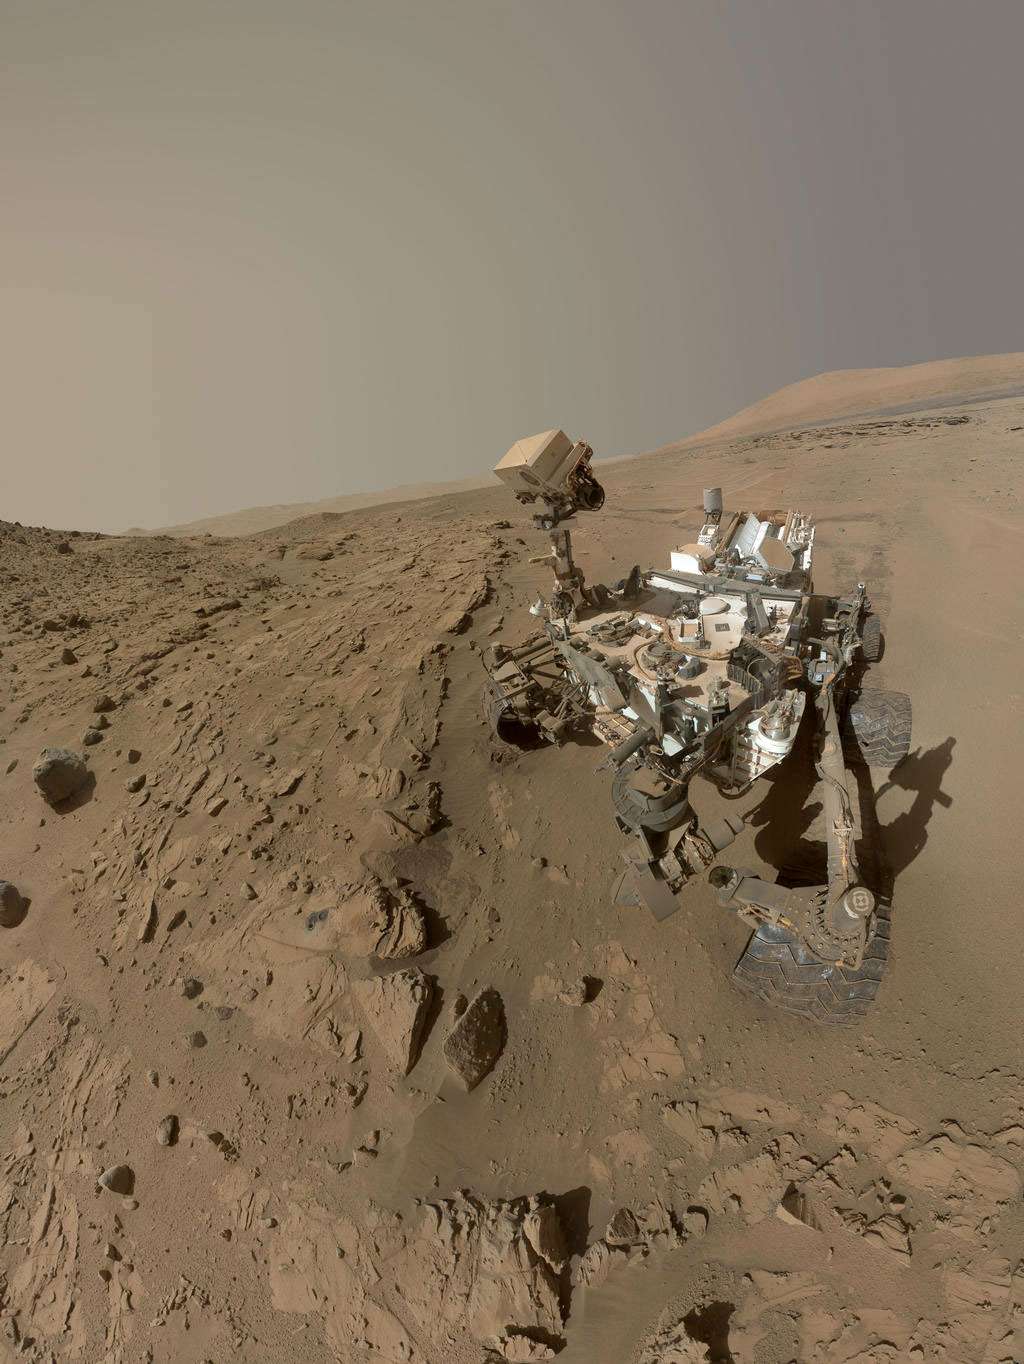 Le rover Curiosity devant son deuxième forage, la dalle de grès baptisée <em>Windjana</em> d'environ 60 cm de large, en mai 2014. © Nasa/JPL-Caltech/MSSS